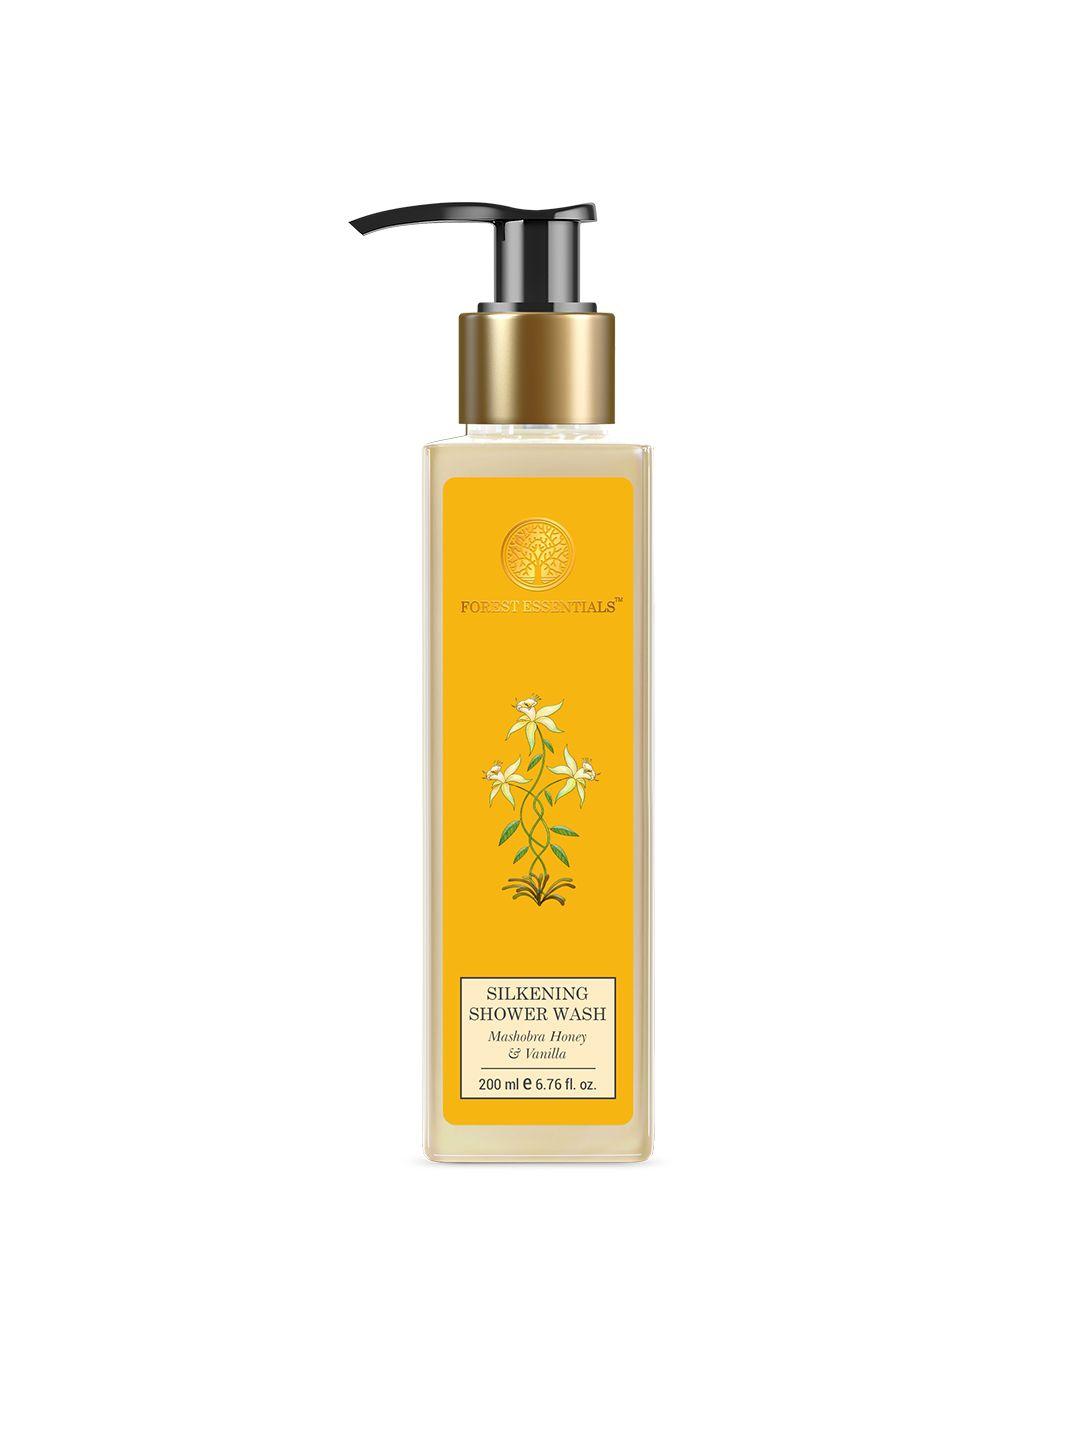 forest essentials silkening shower wash with mashobra honey & vanilla - 200 ml